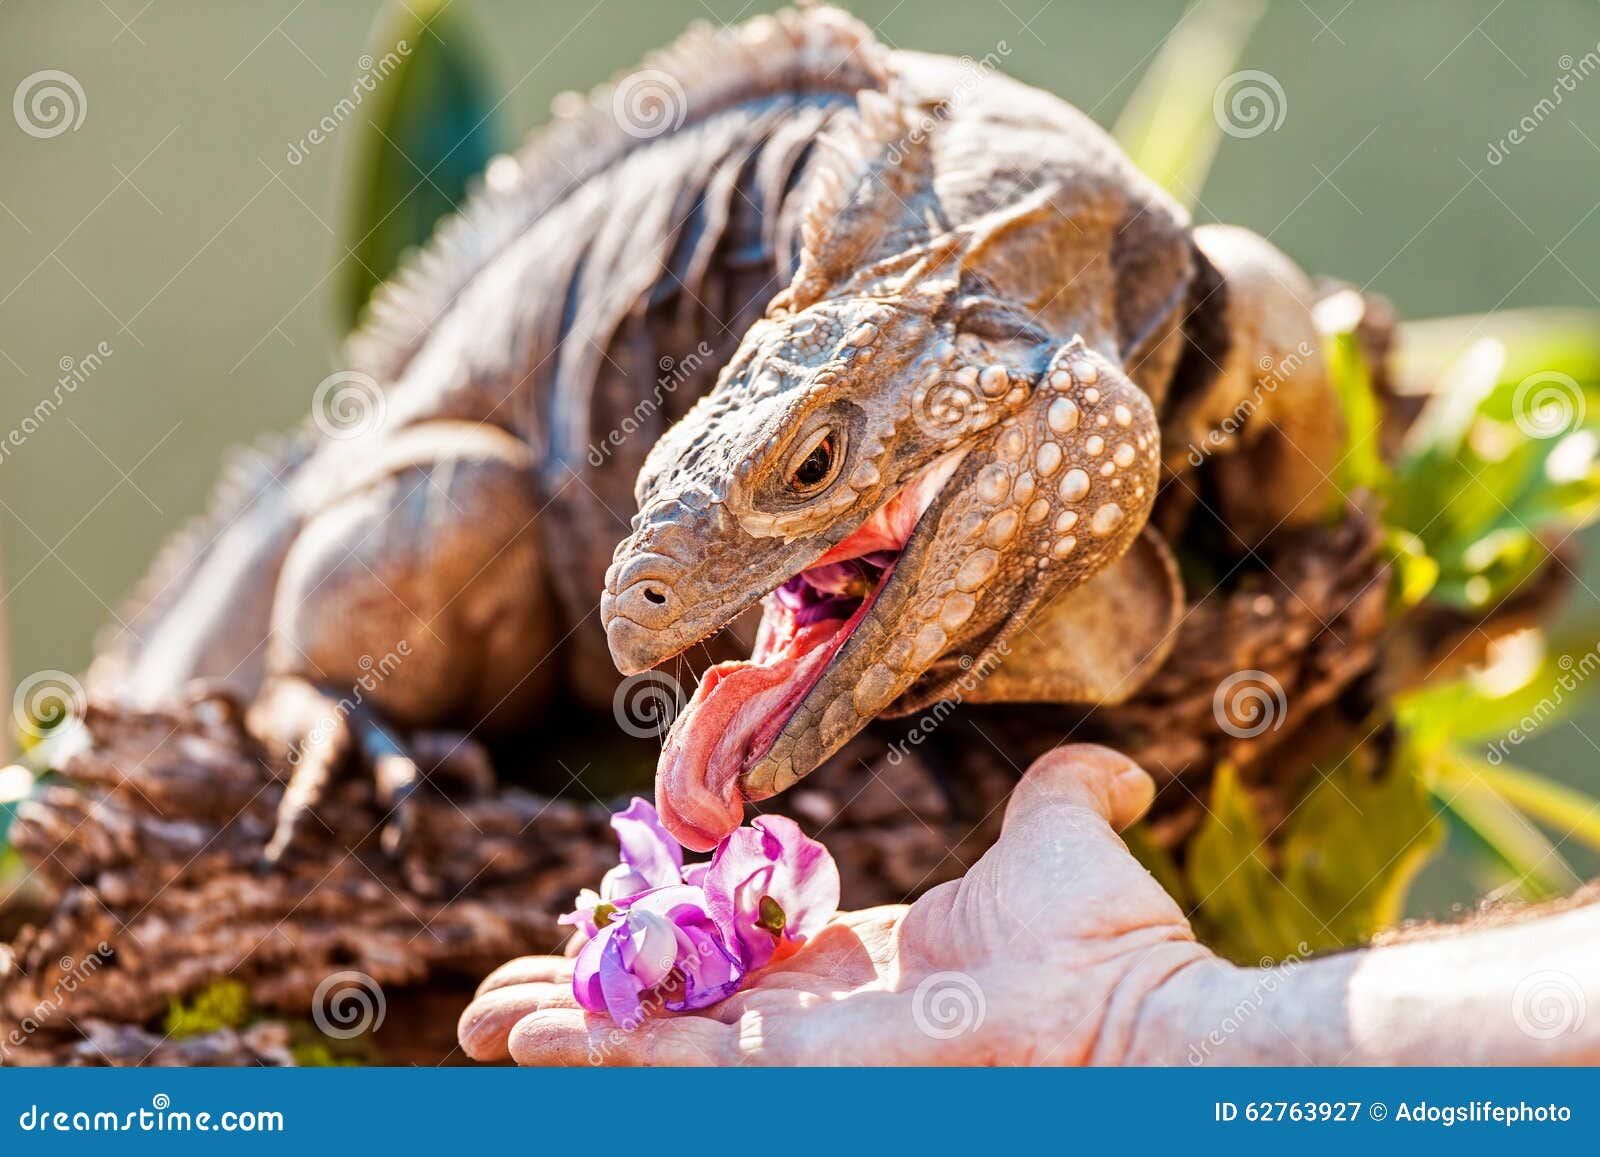 Man Feeding Orchids To Blue Iguana Stock Image - Image of iguana, cropped:  62763927